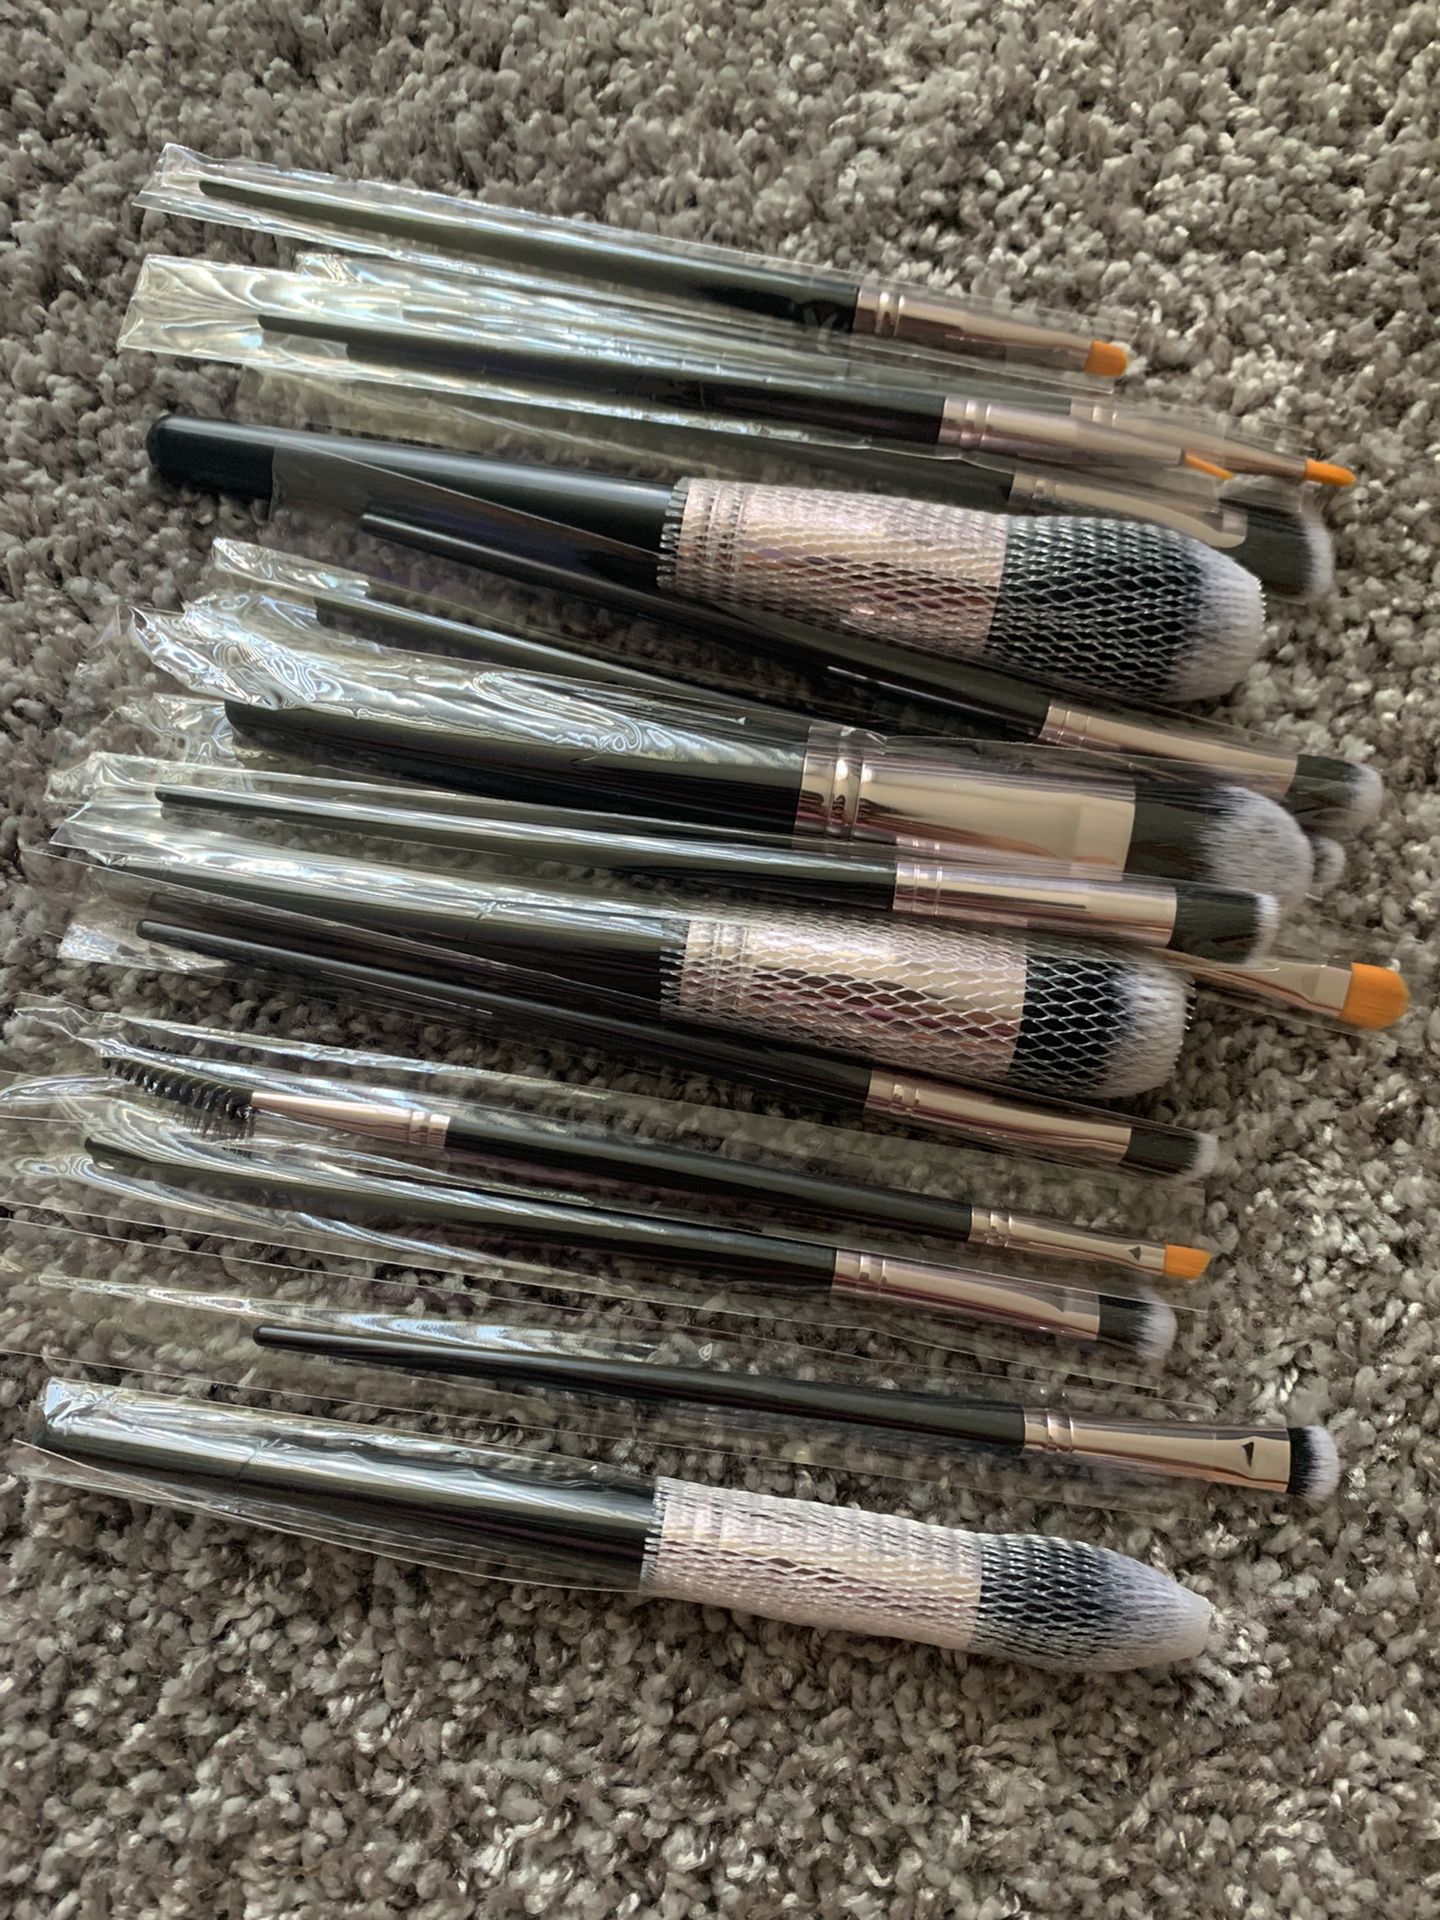 16 Piece Makeup Brush Set